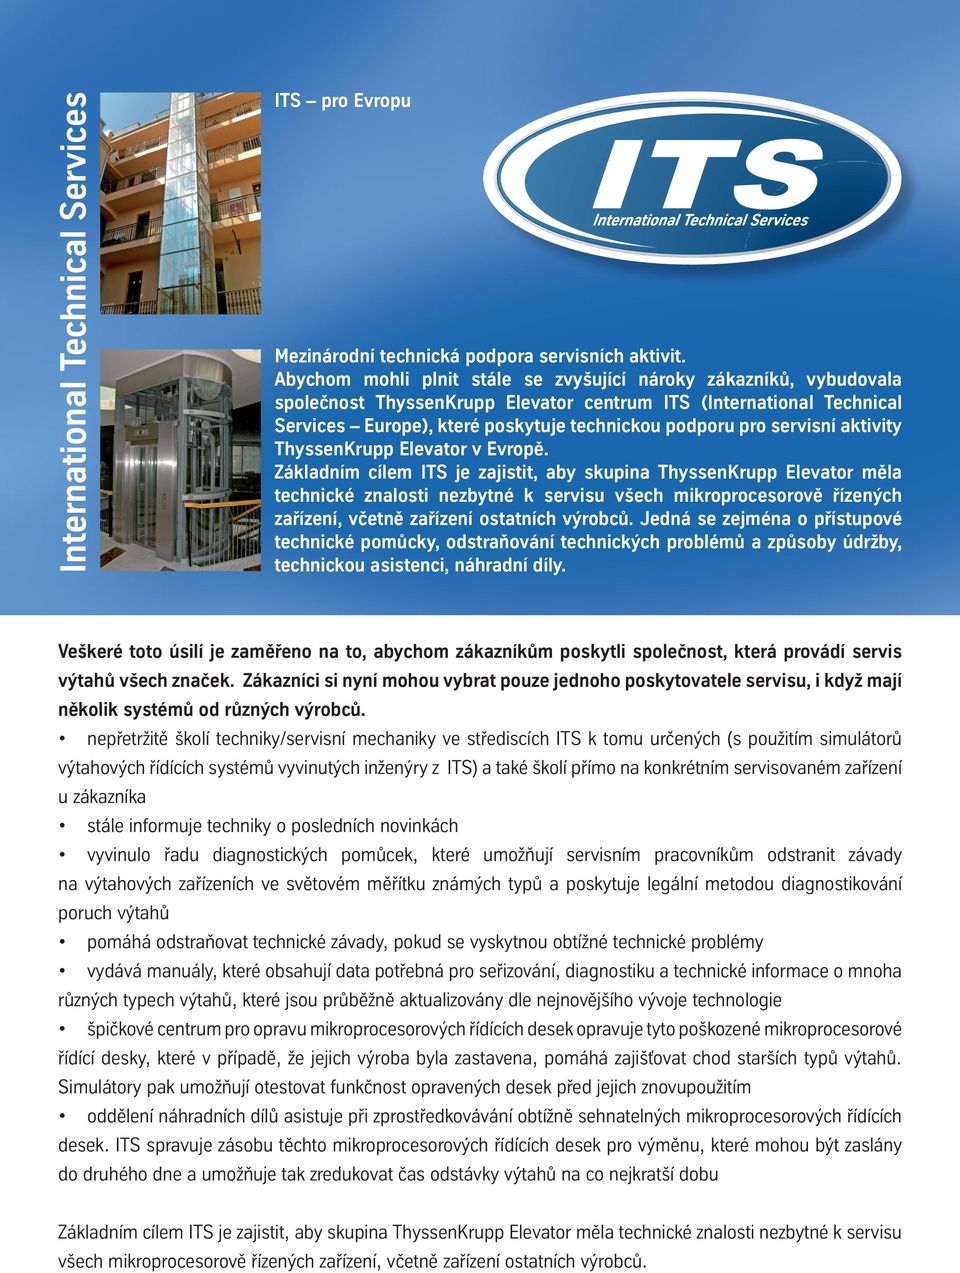 servisní aktivity ThyssenKrupp Elevator v Evropě.